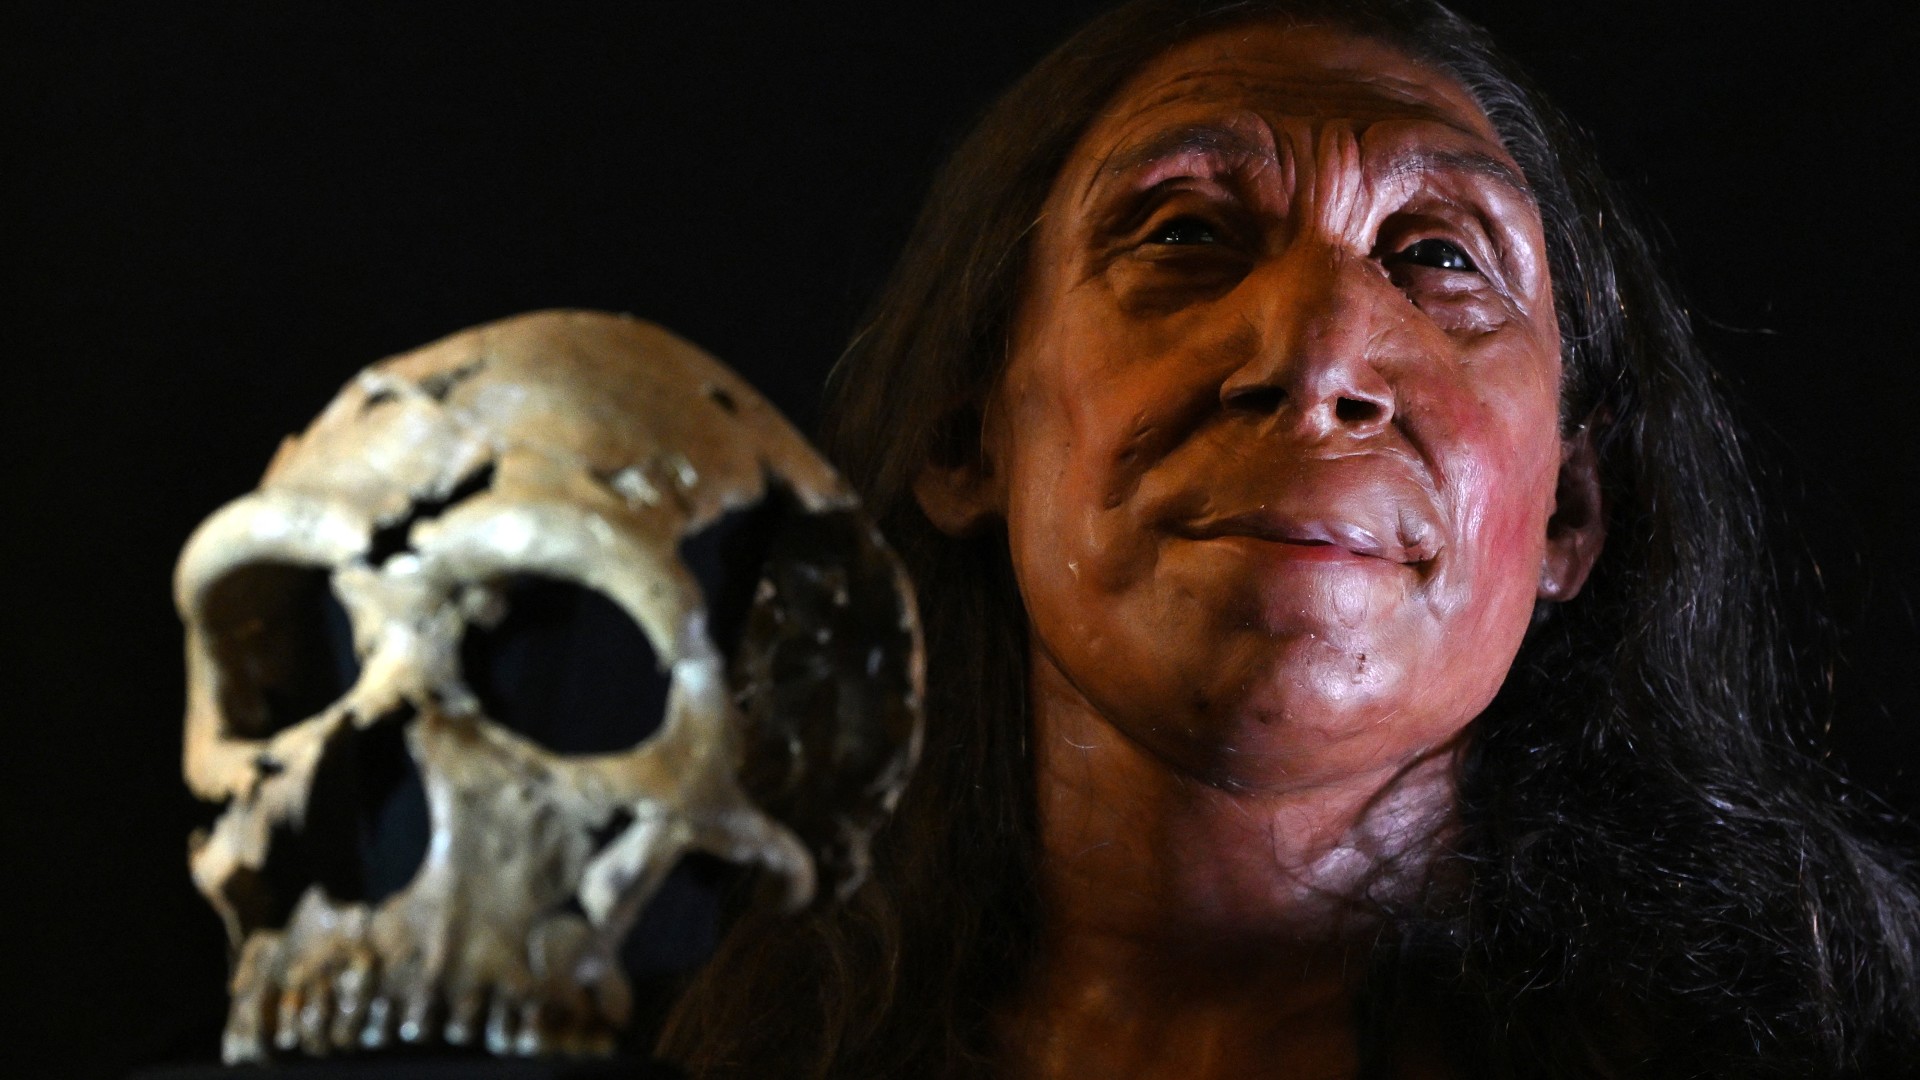 Imagem lado a lado do crânio do Neandertal 'Shanidar Z' à esquerda com sua reconstrução facial à direita. Ela pode ser vista com longos cabelos castanhos esvoaçantes e um olhar determinado.